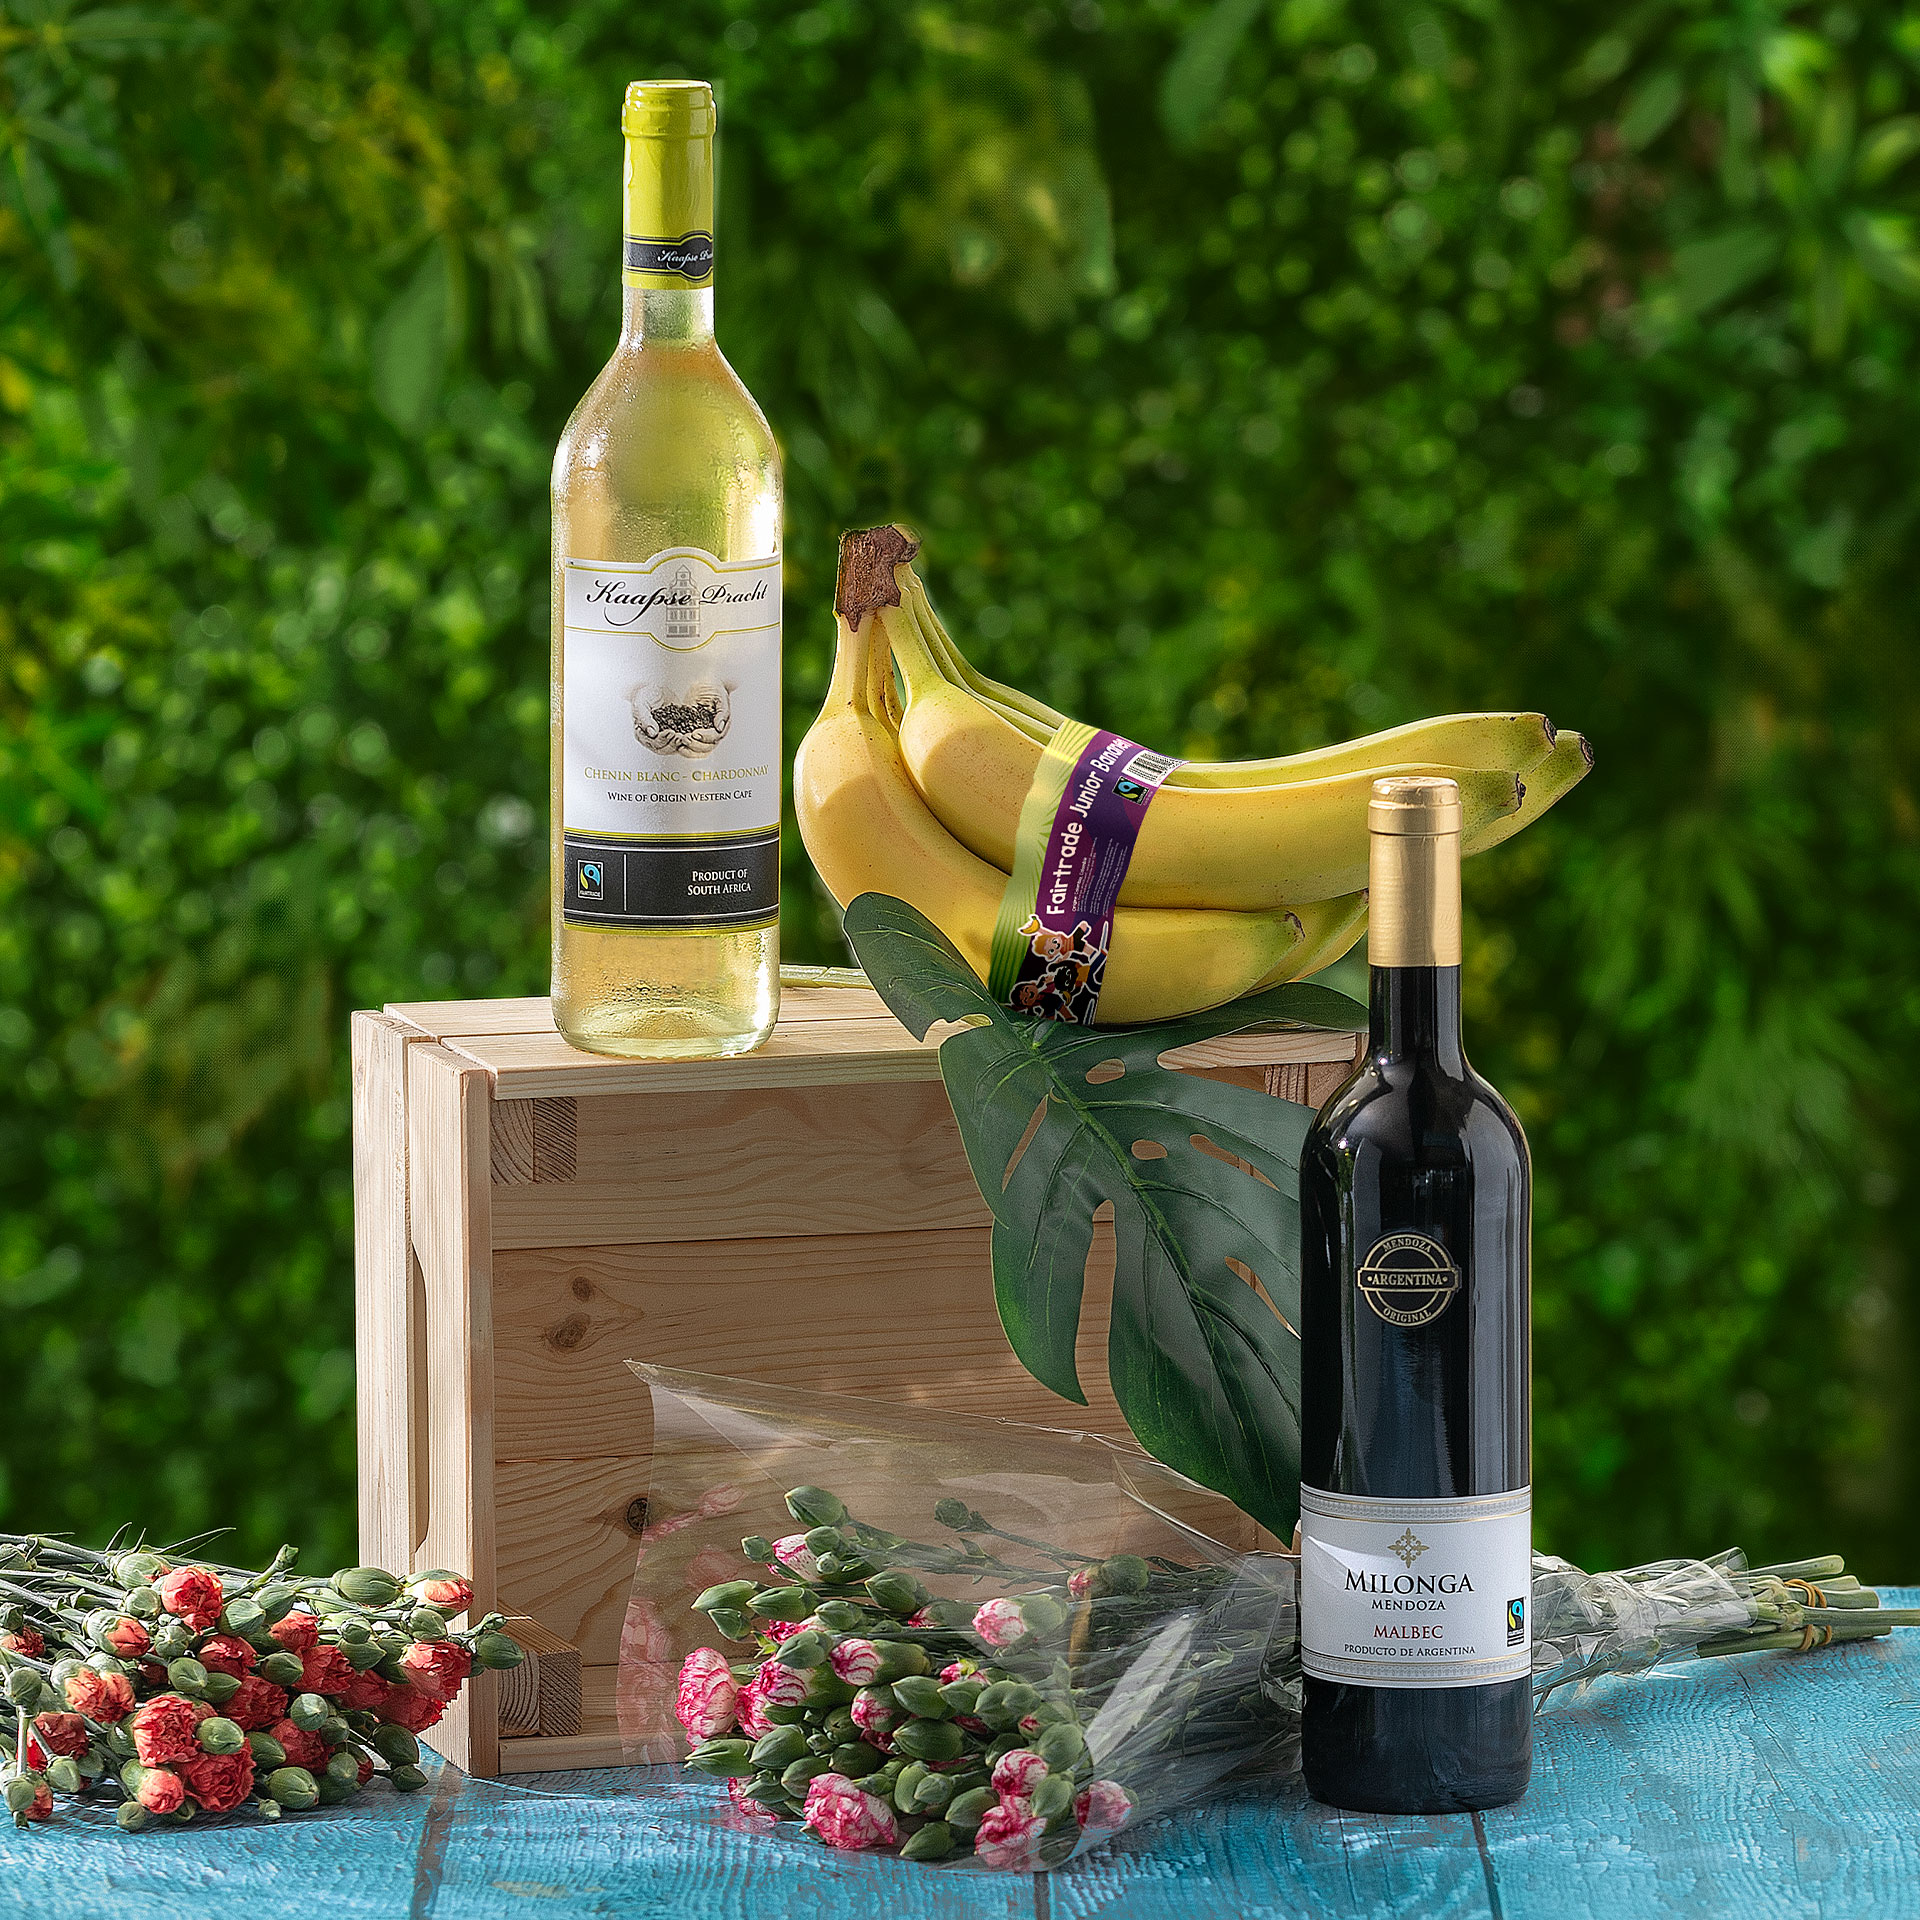 KAAPSE PRACHT® Fairtrade-Wein Chardonnay-Chenin blanc günstig bei ALDI